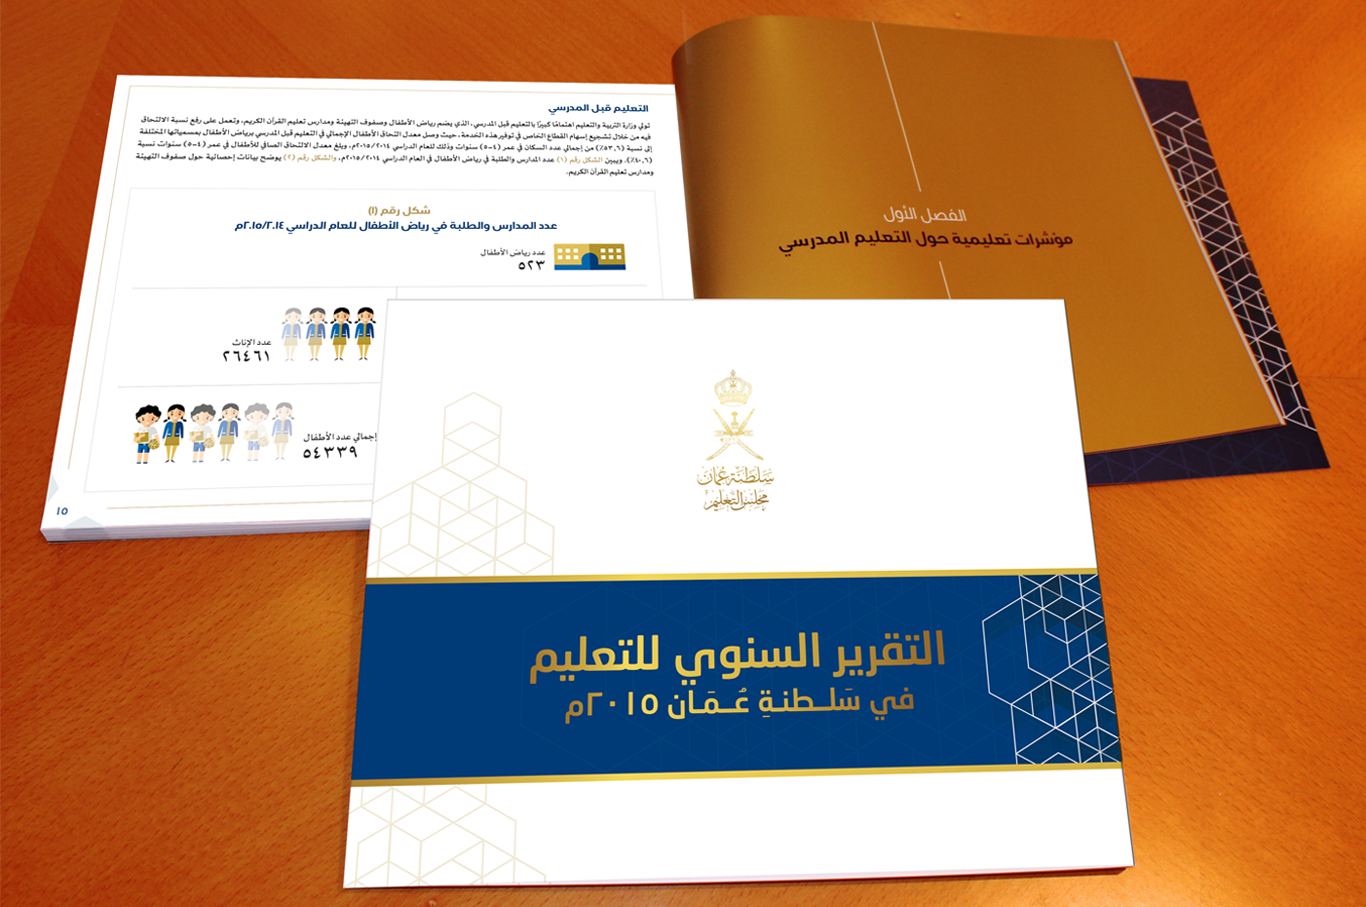 مجلس التعليم يصدر تقريره السنوي عن التعليم في سلطنة عُمان 2015م